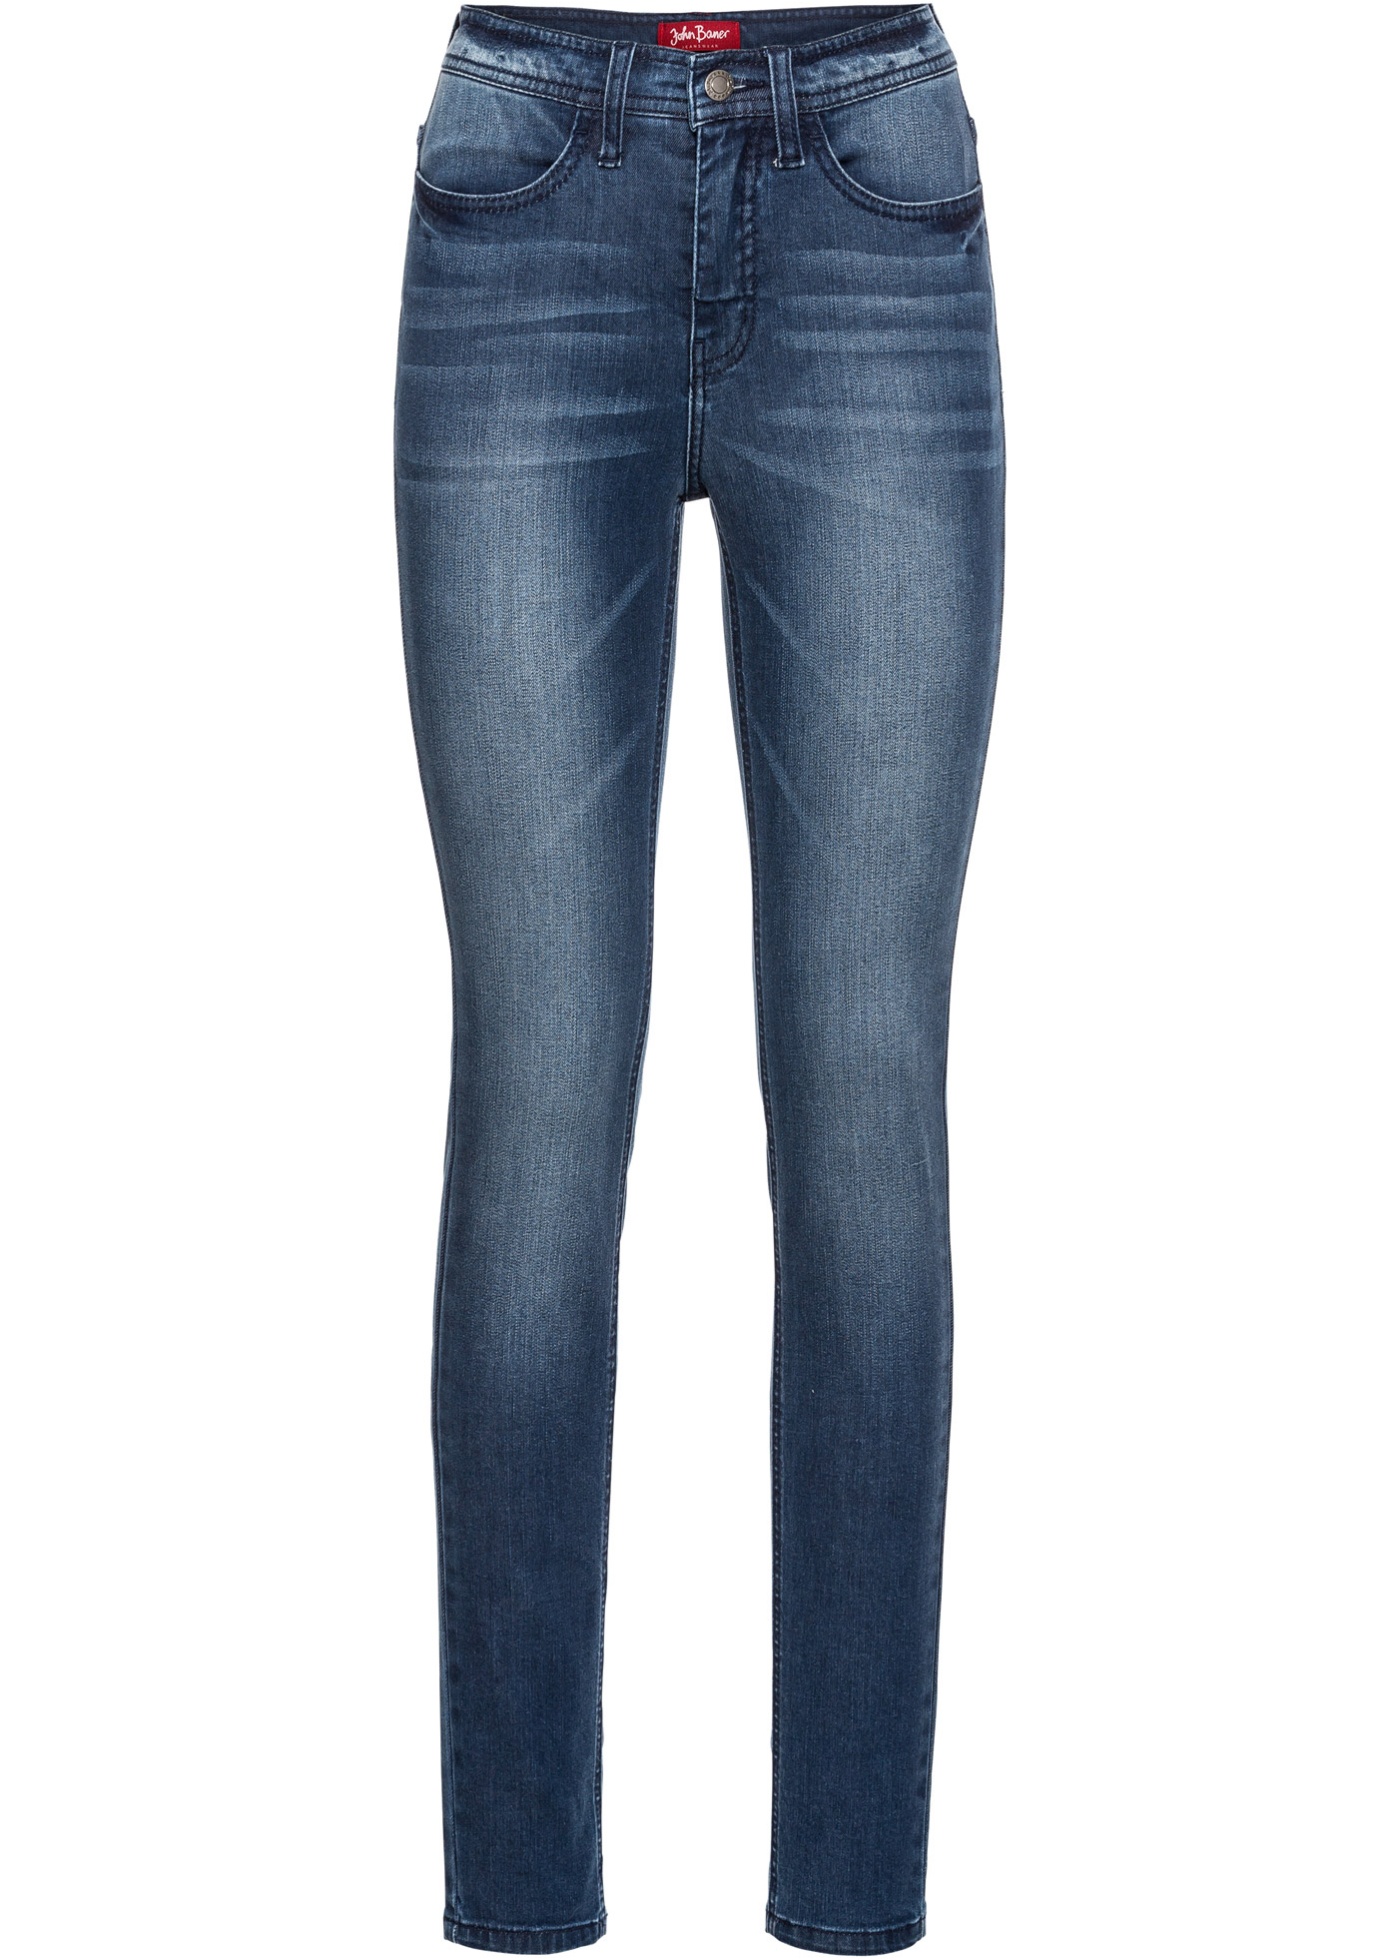 Bonprix - Skinny jeans 349.00